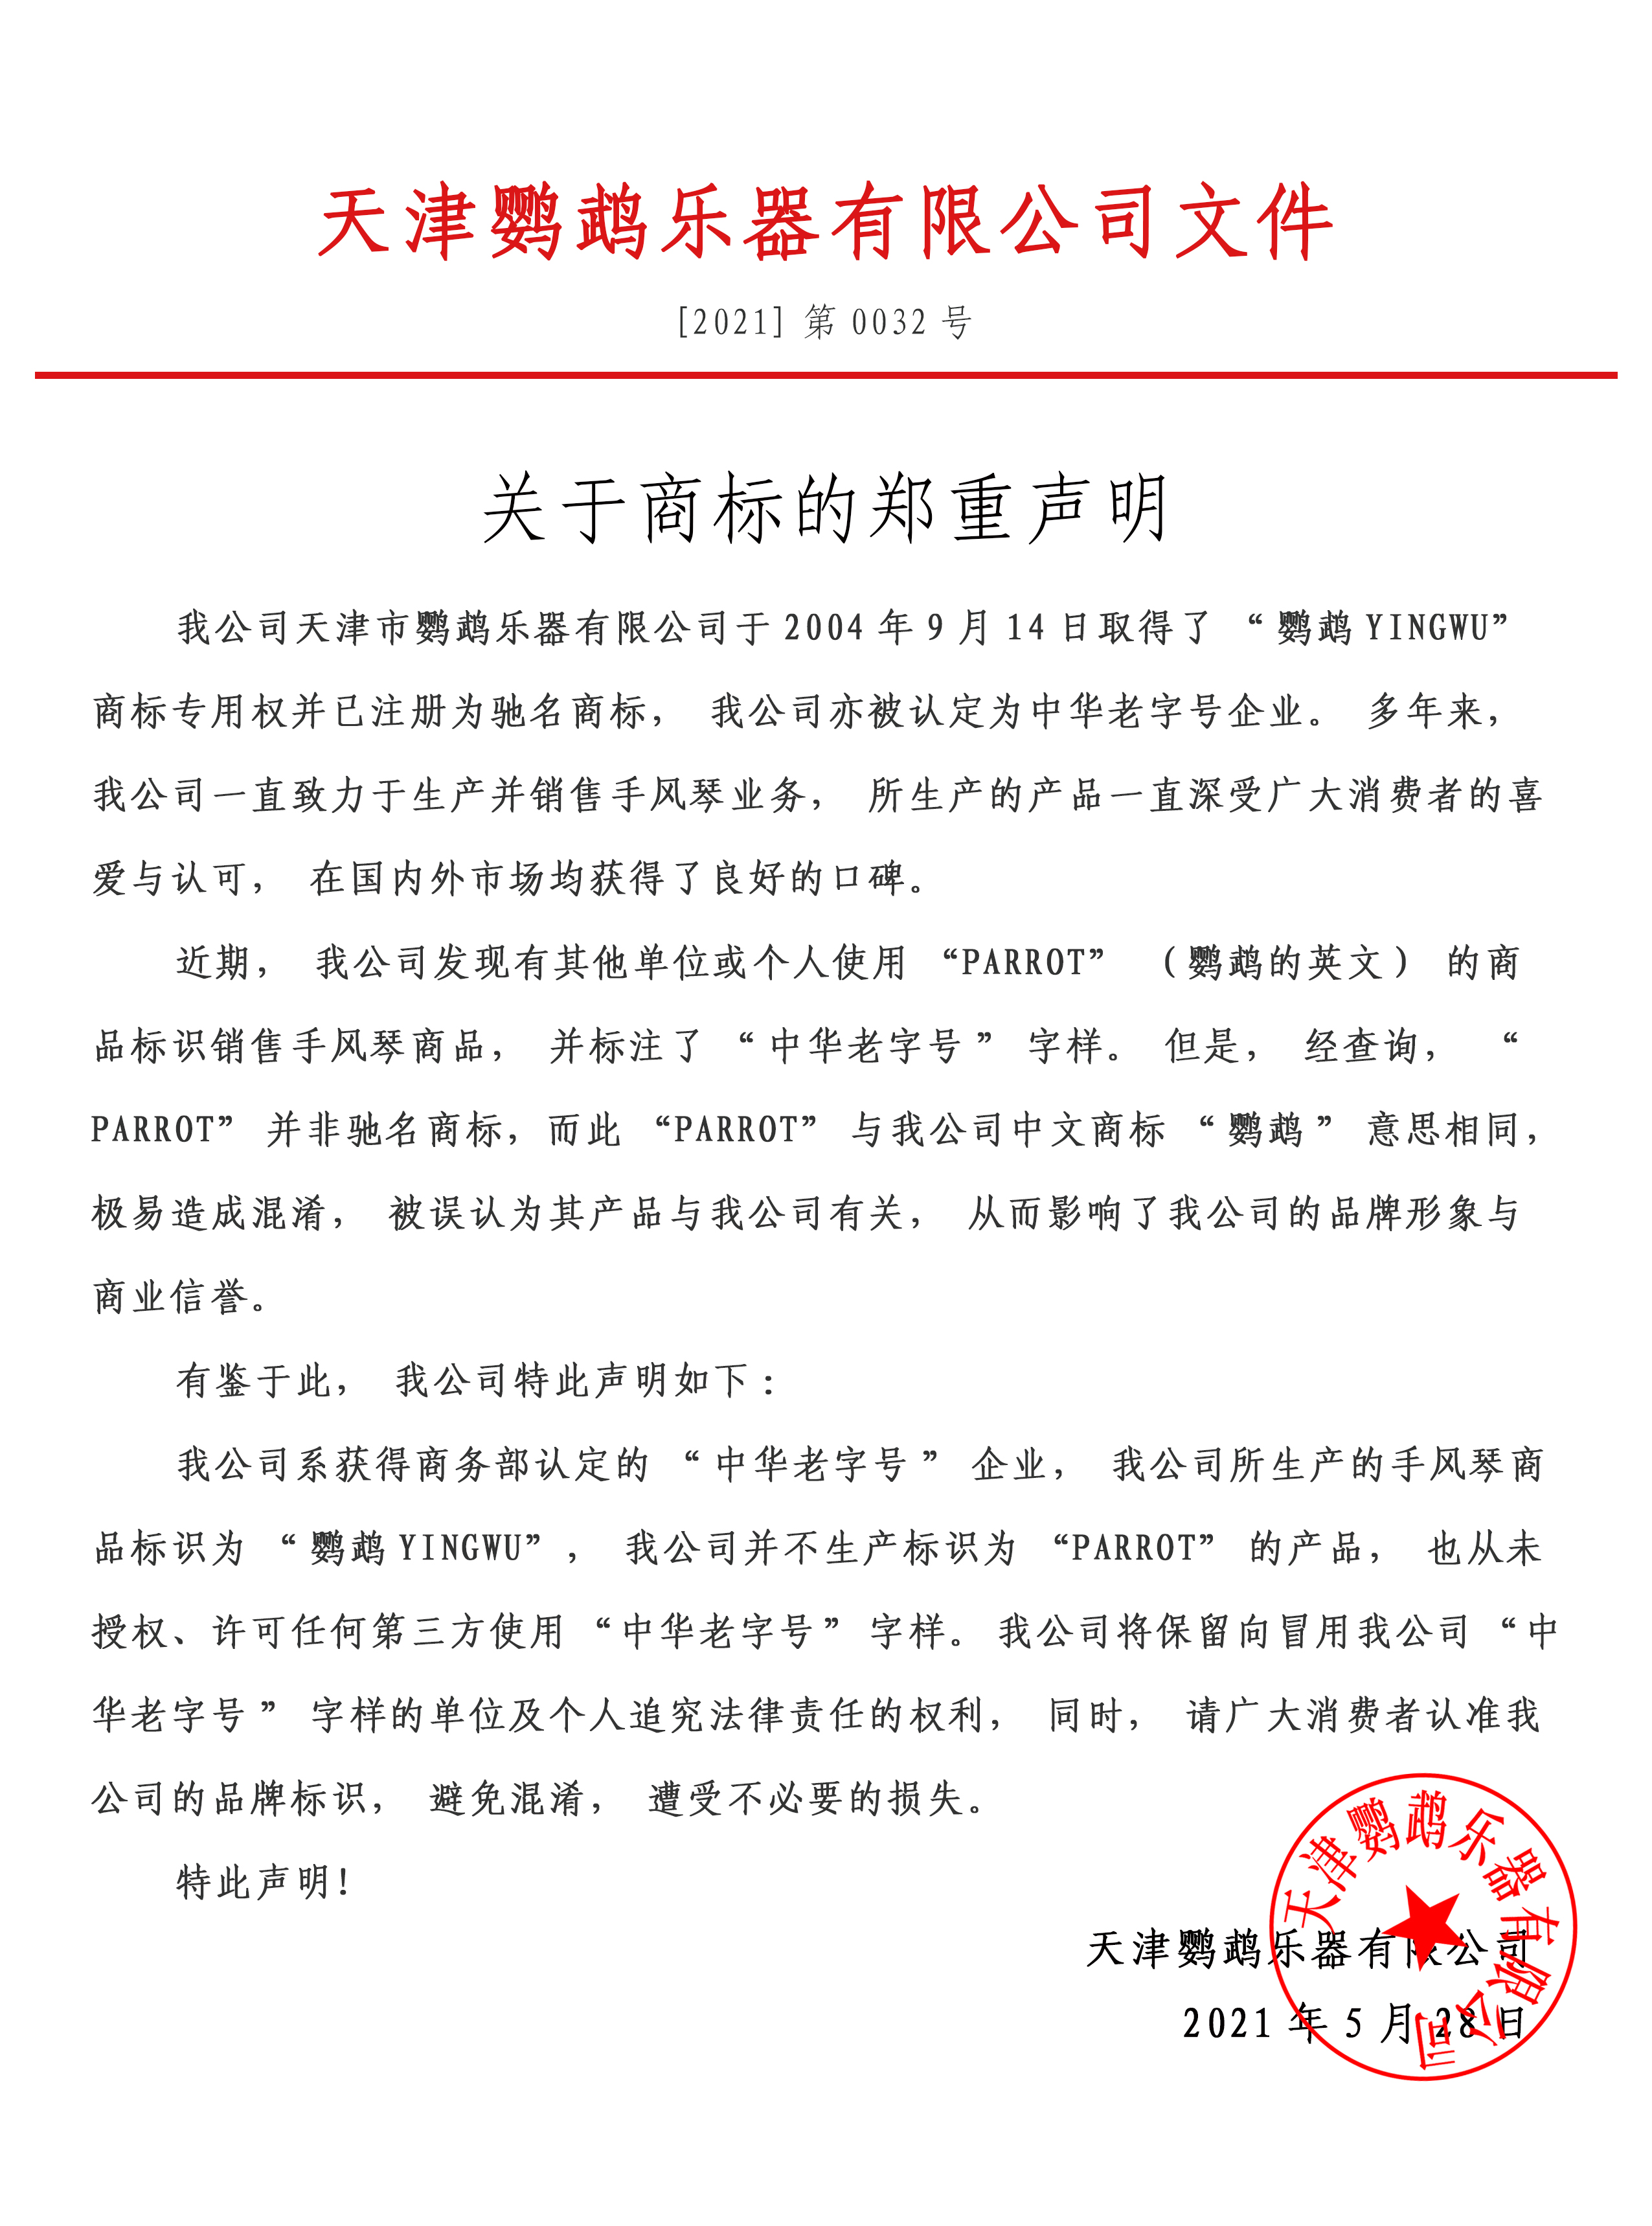 天津鹦鹉乐器有限公司关于商标的郑重声明